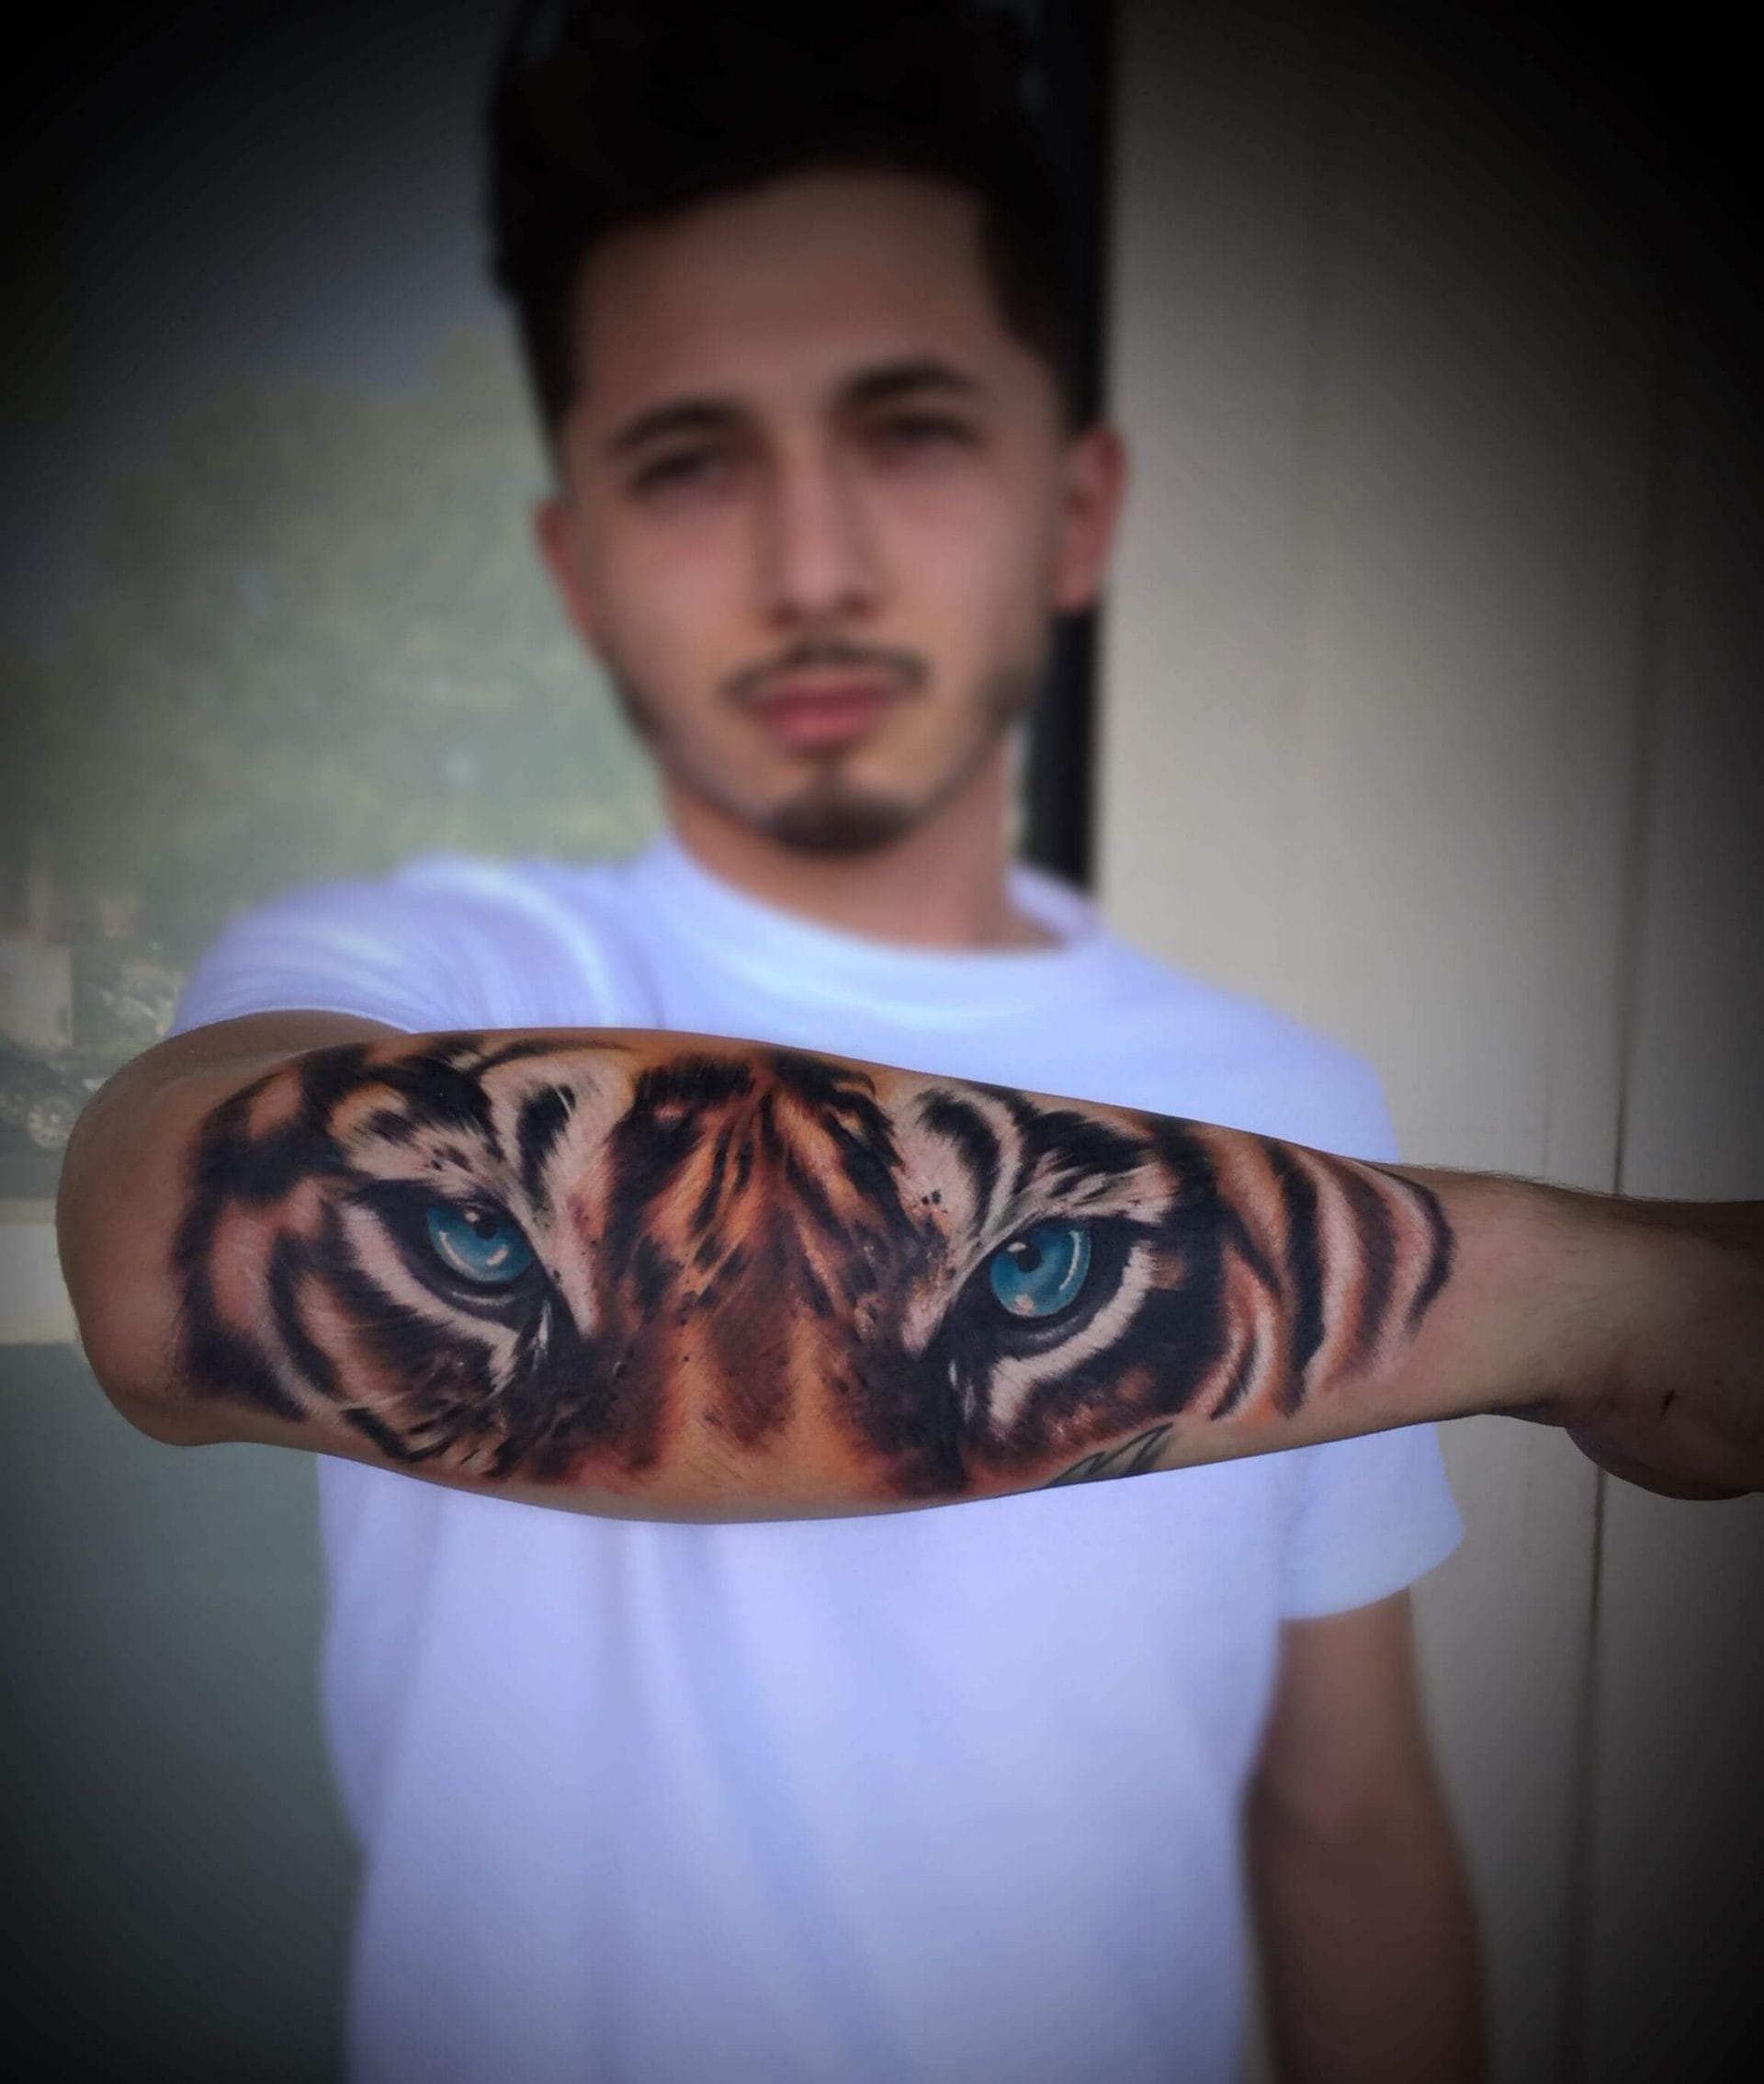 20+ Best Tiger Eyes Tattoo Designs & Ideas - PetPress